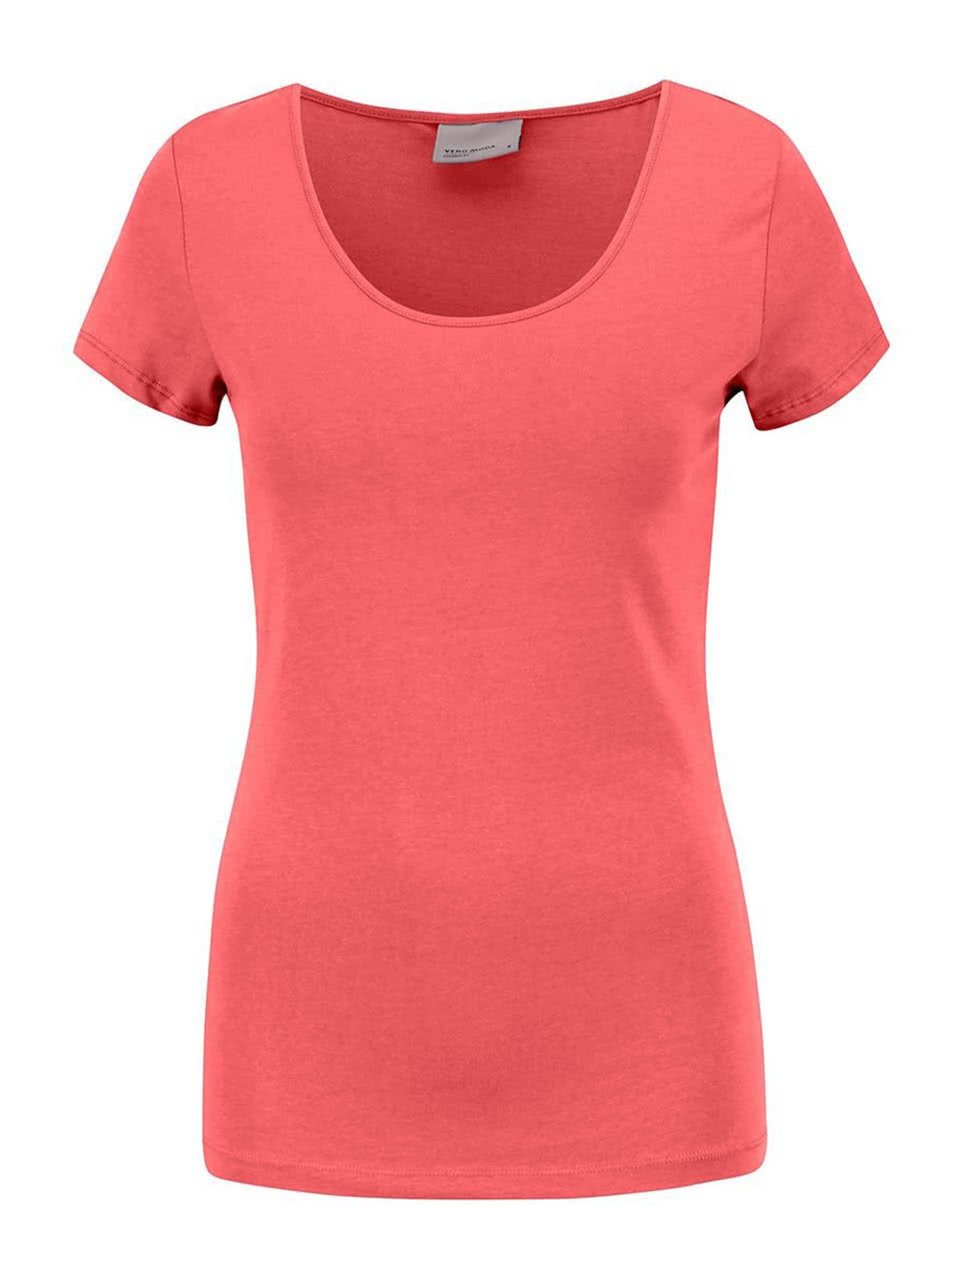 Tmavě růžové tričko s krátkým rukávem Vero Moda Maxi My